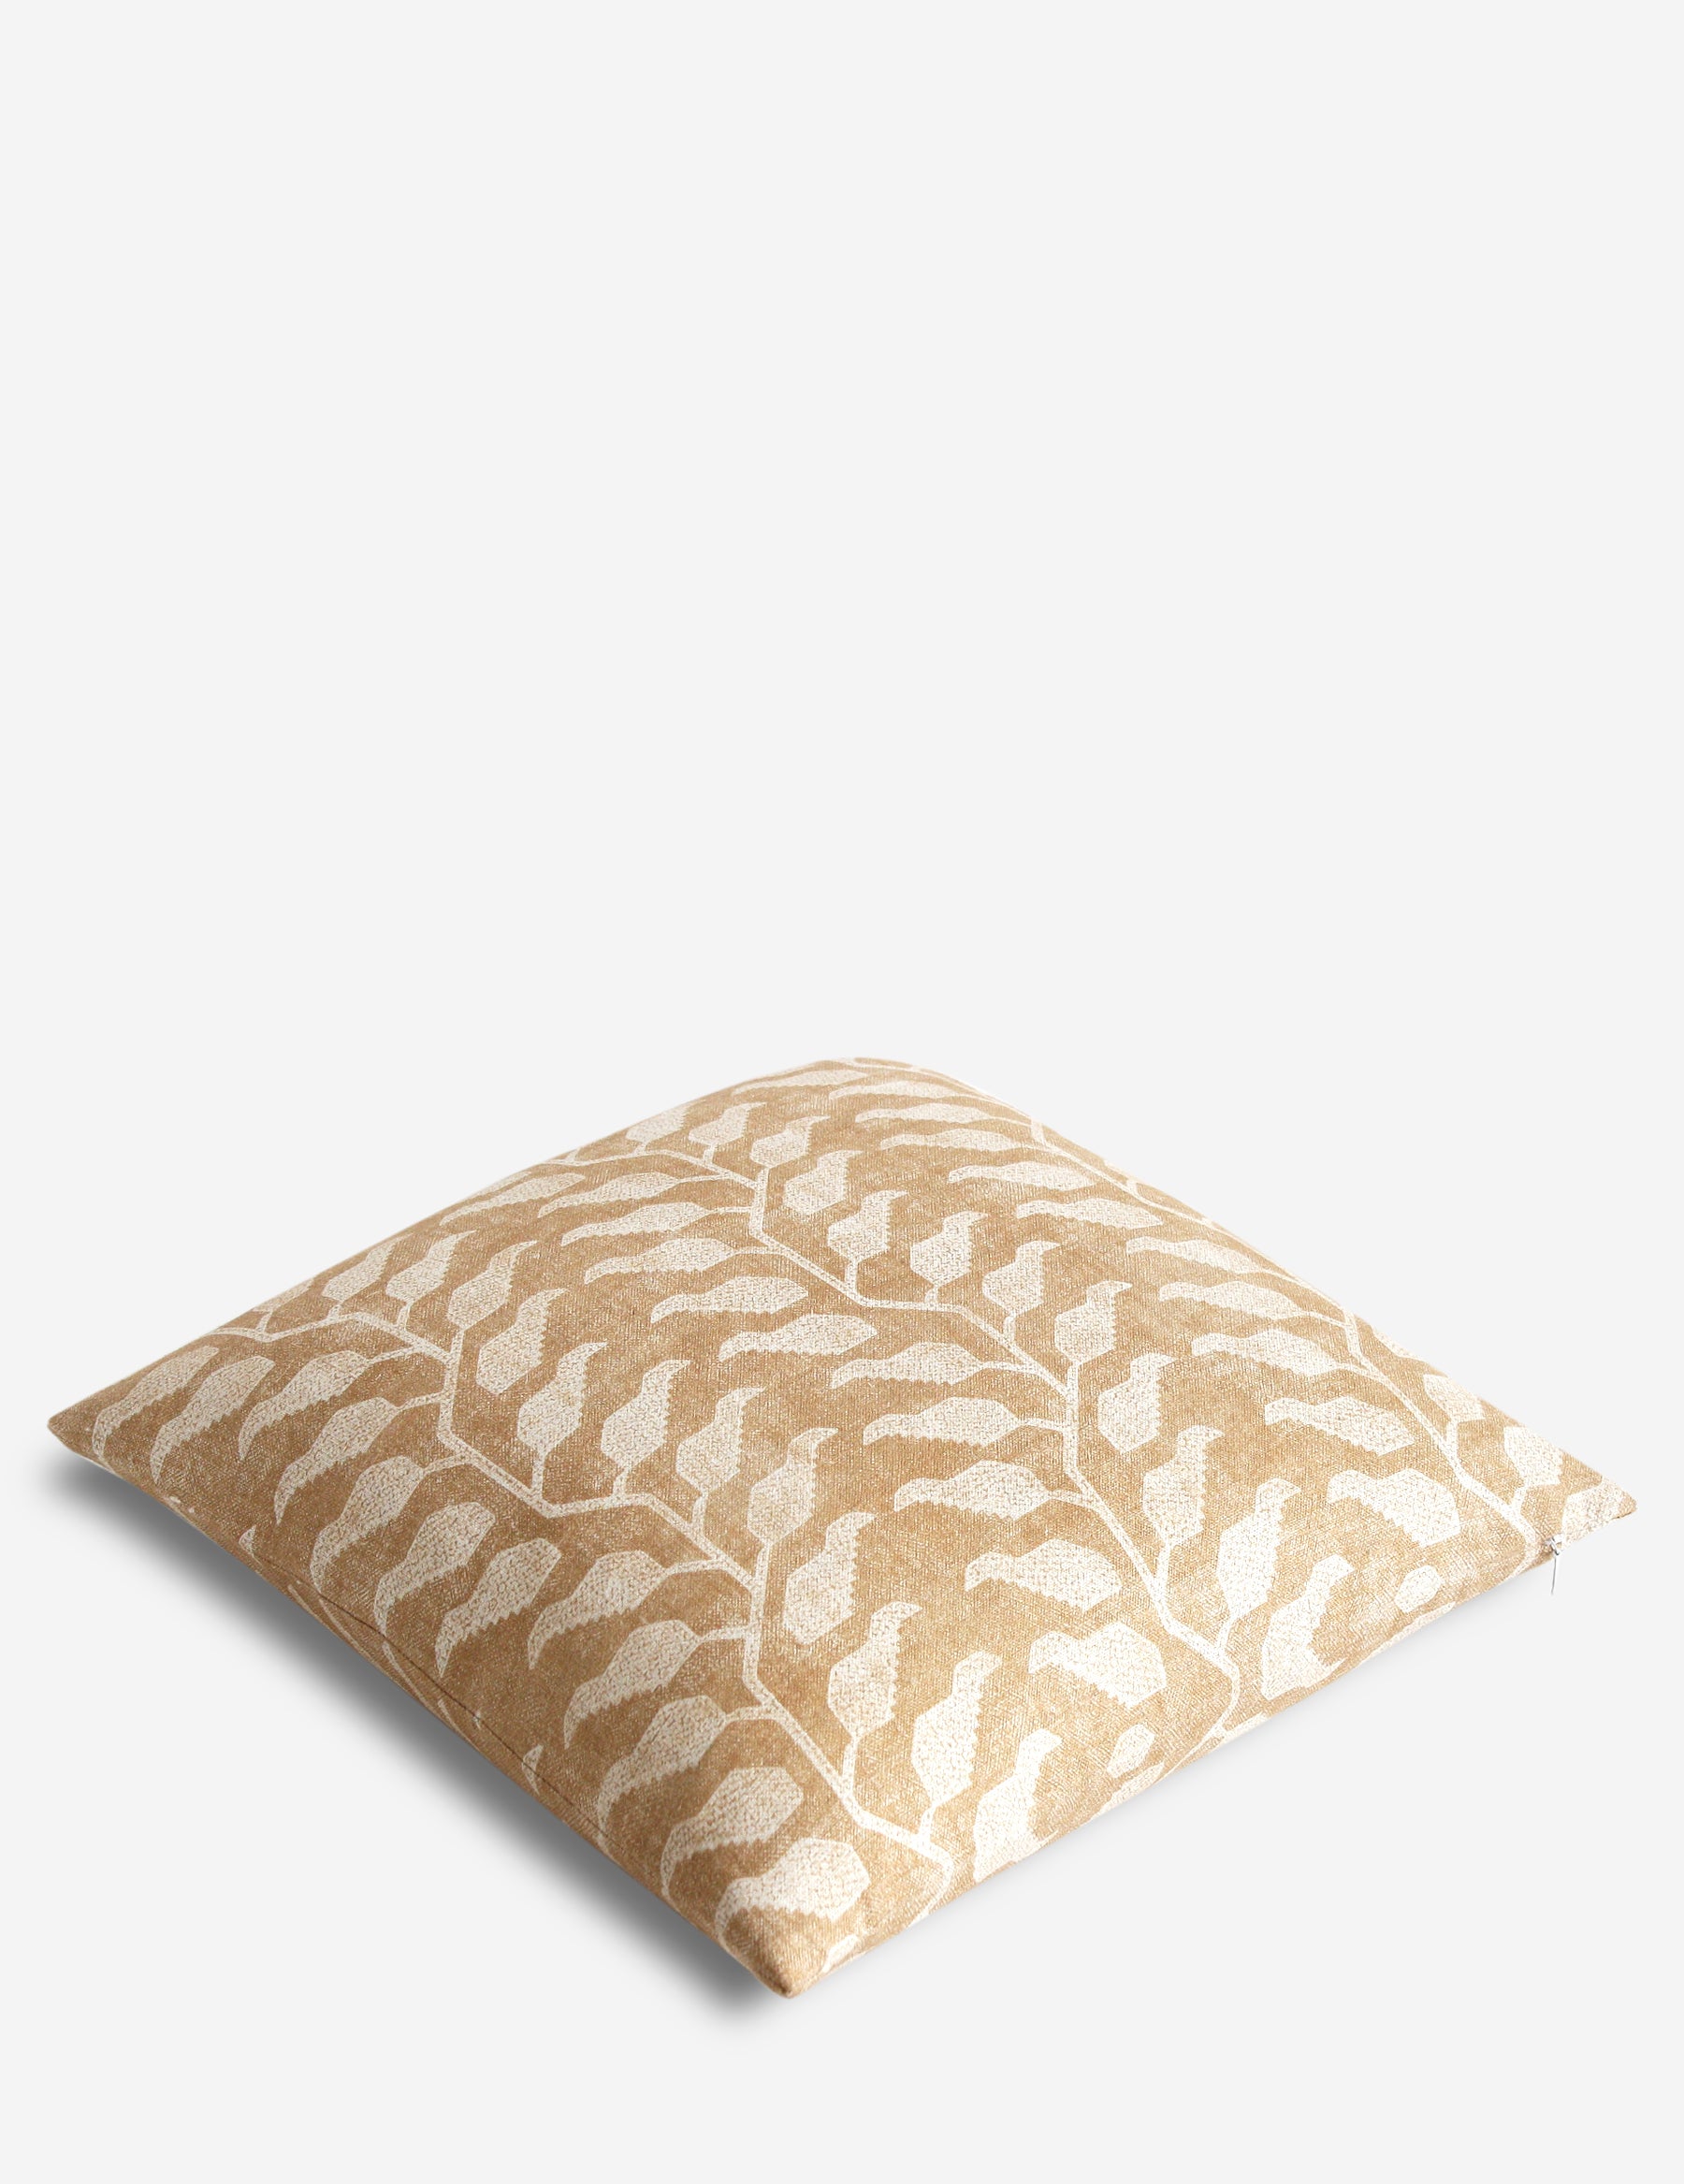 Folio Pillow / Ochre Natural